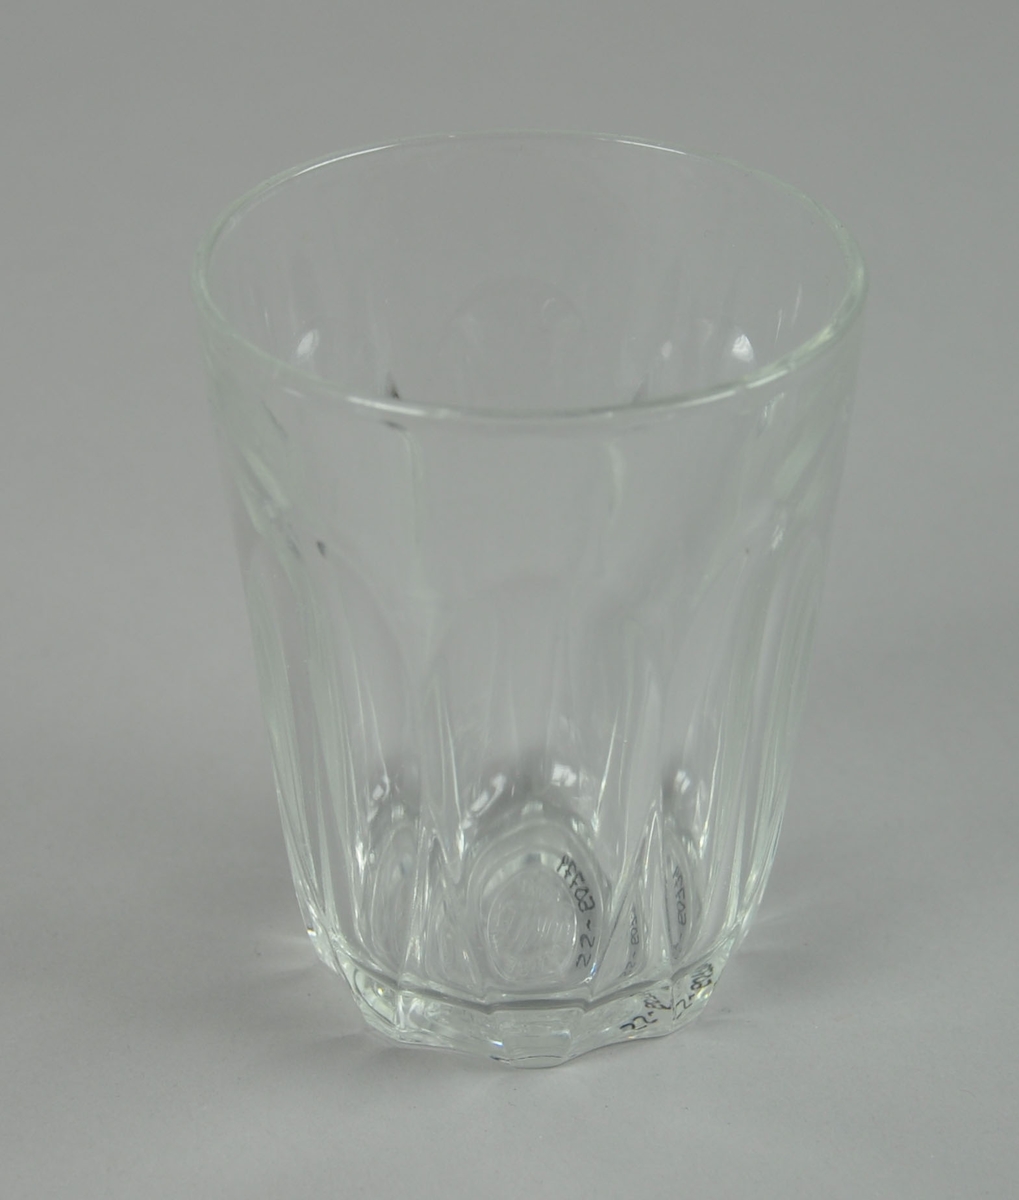 Drikeglass med ovale, fasetterte mønstre på utsiden.